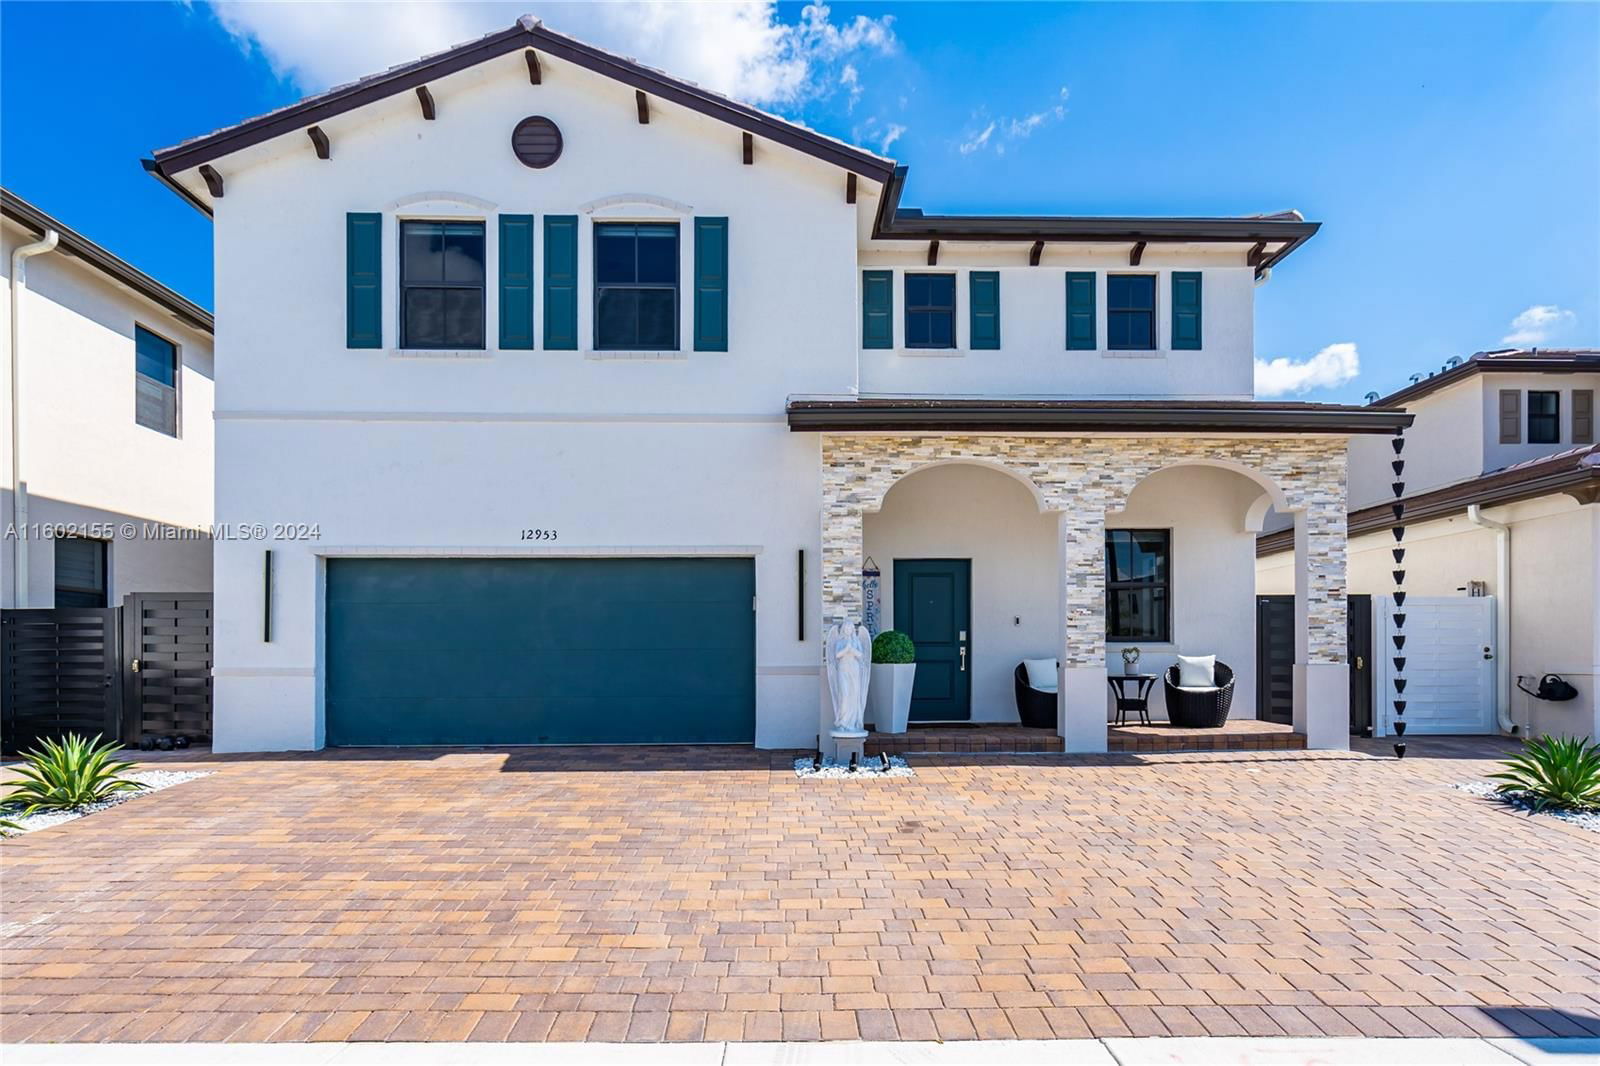 Real estate property located at 12953 230th St, Miami-Dade County, Miami, Miami, FL